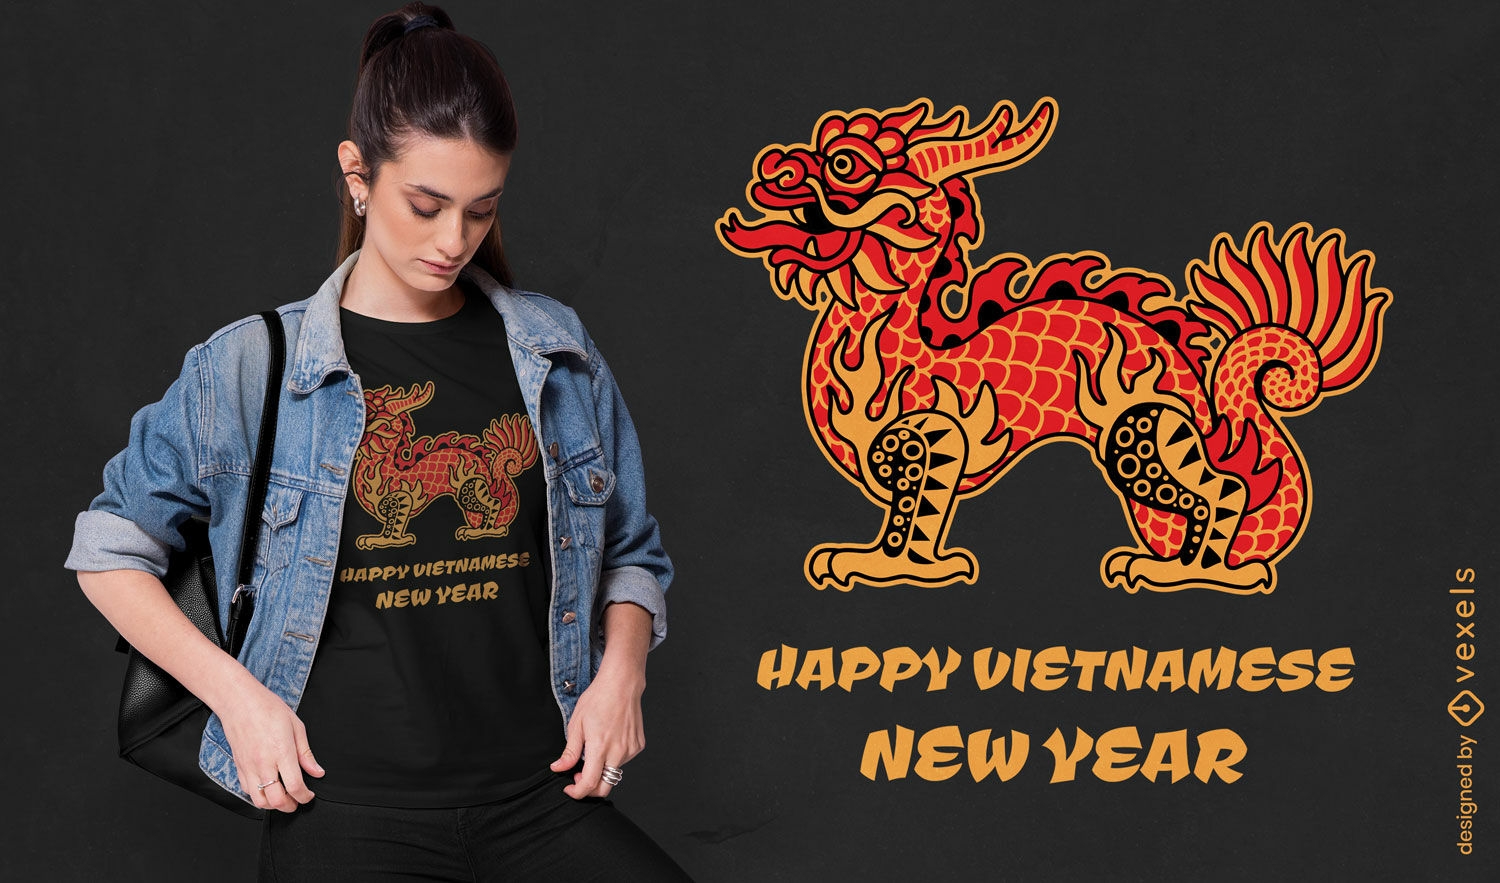 Happy Vietnamese new year t-shirt design